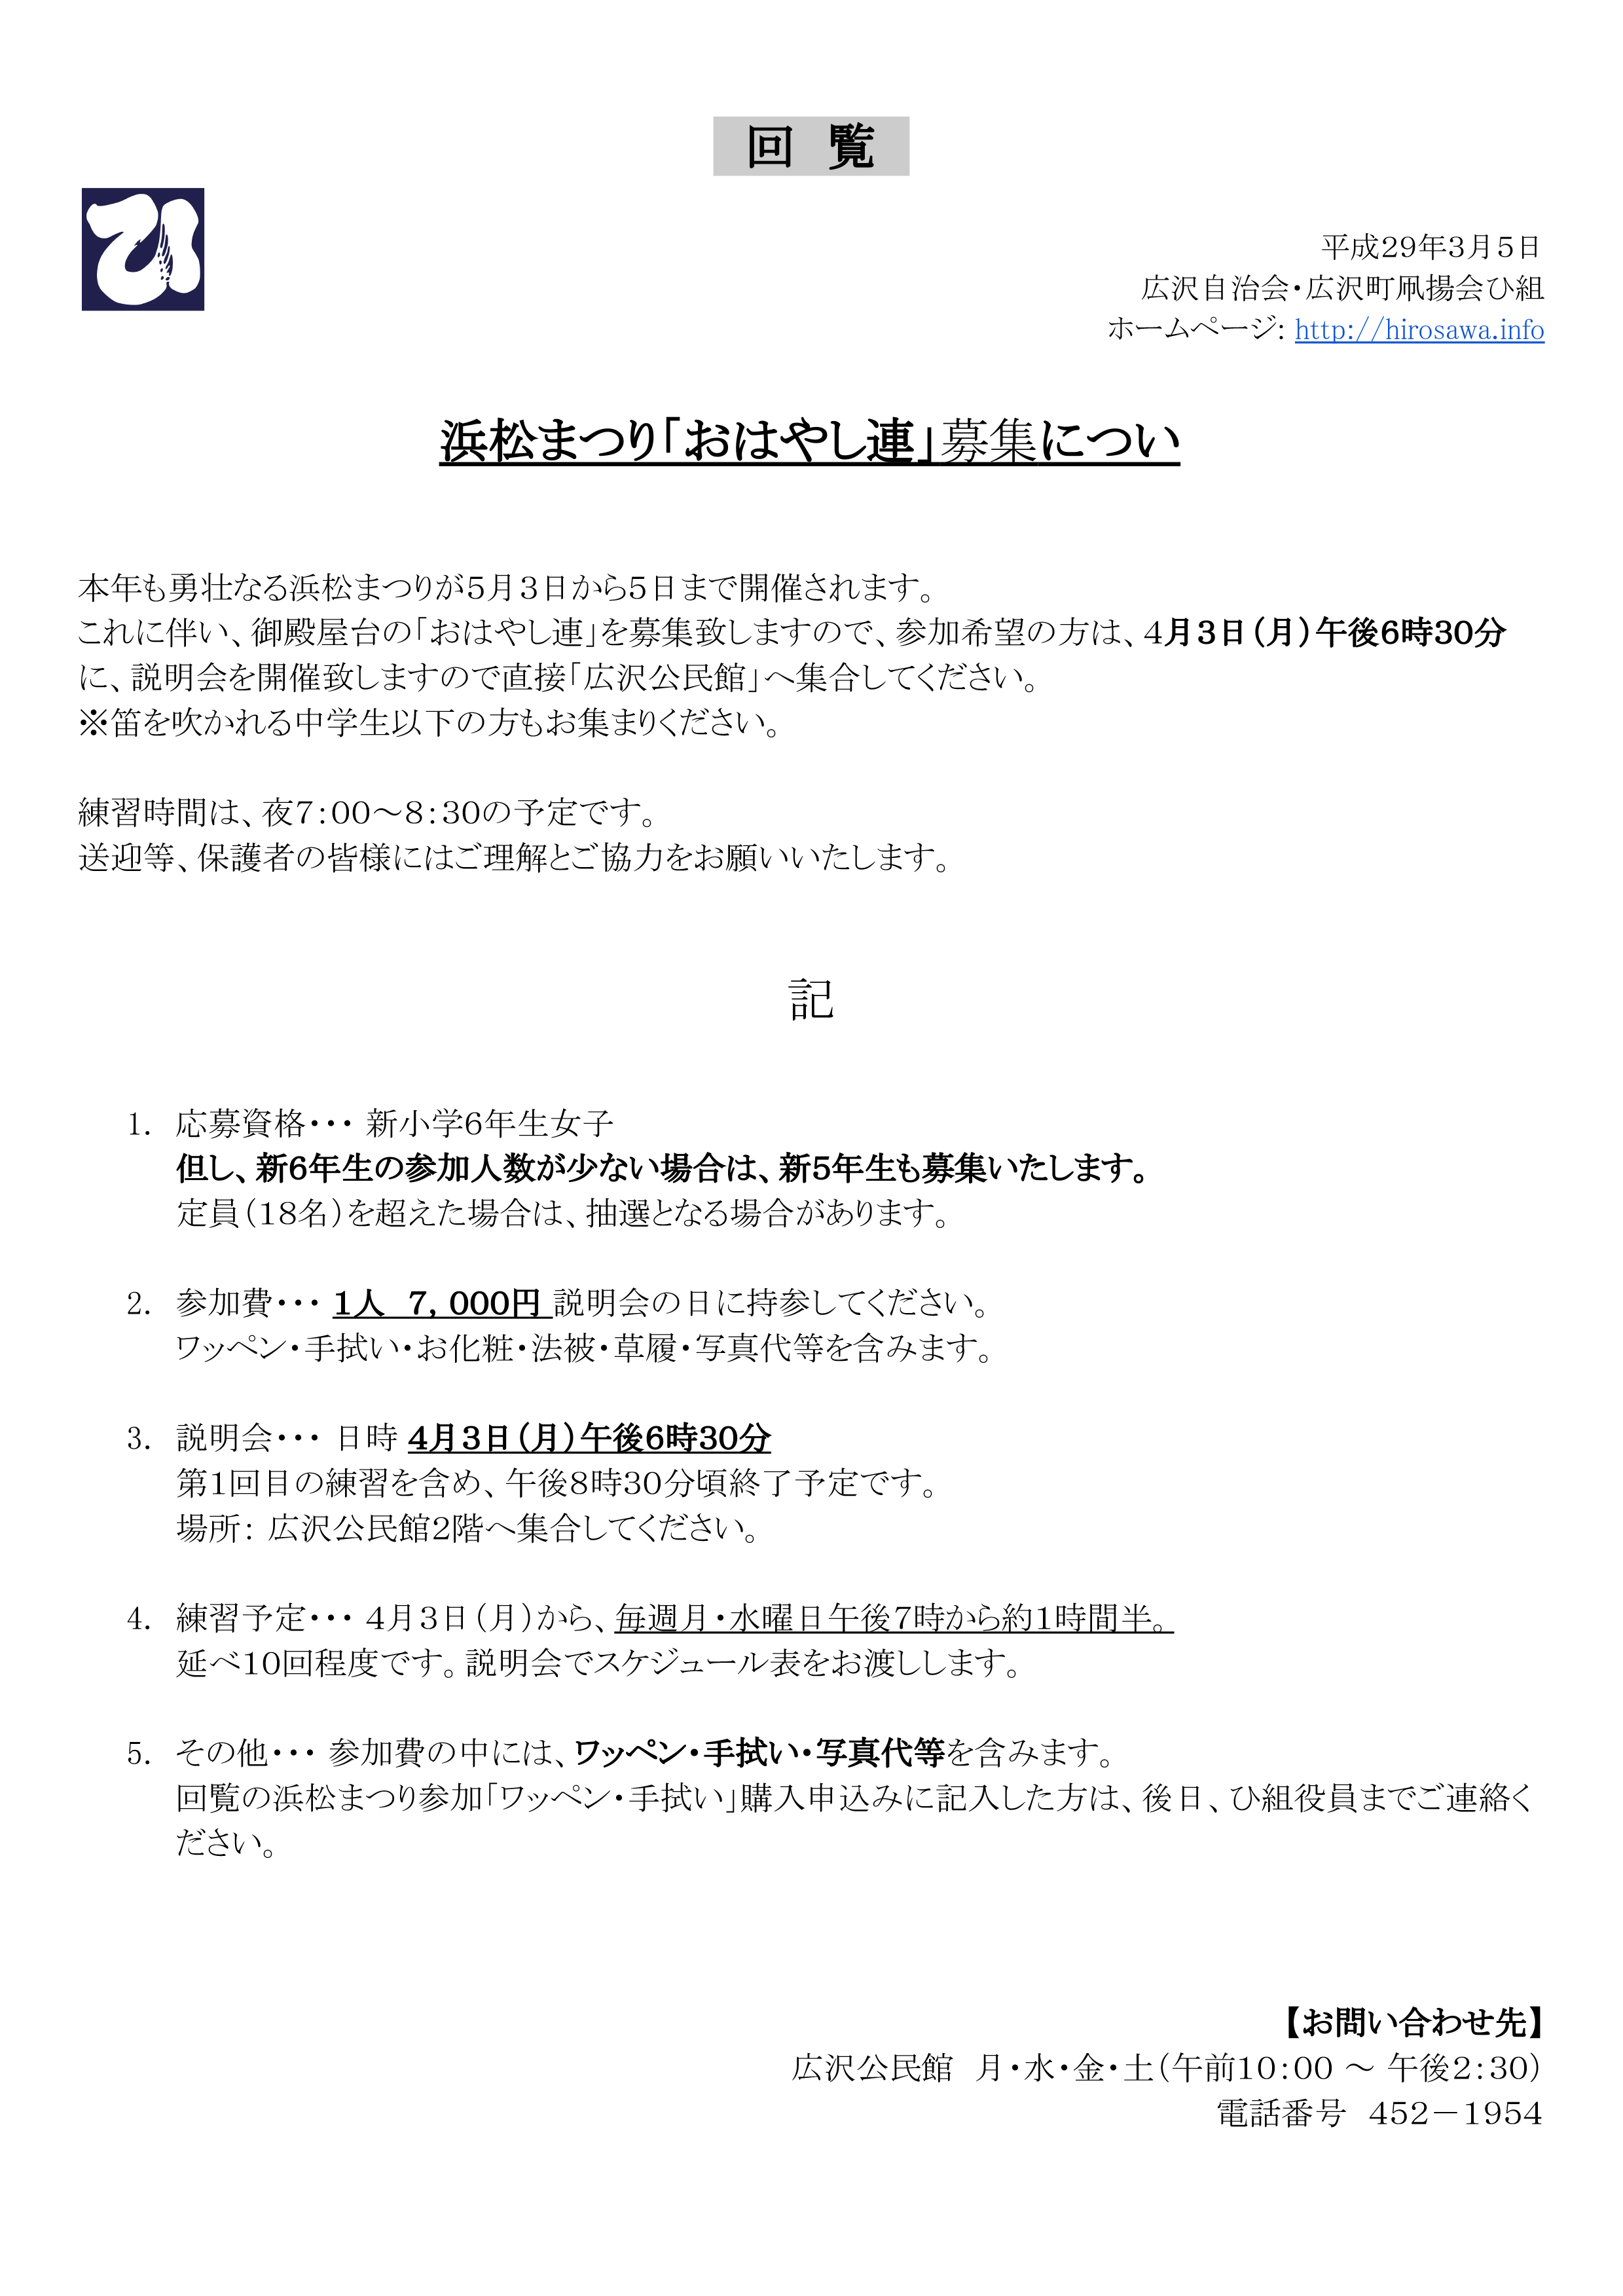 【回覧資料】平成29年3月5日 浜松まつり「おはやし連」募集について・日枝神社周辺の皆様へお願い